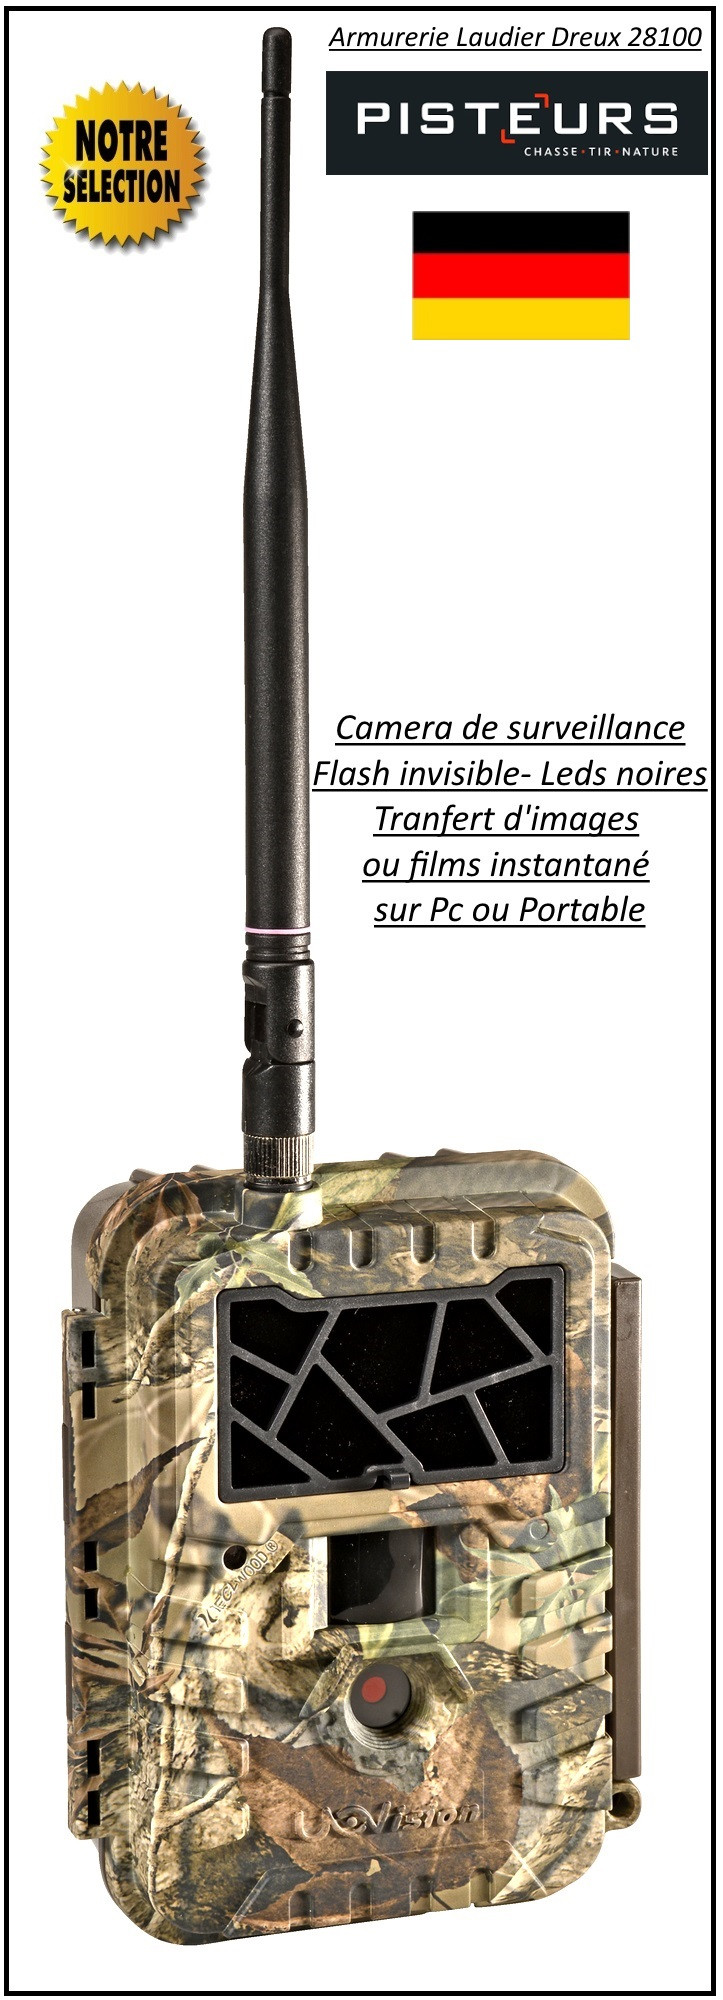 Caméra surveillance-Maison-ou-Chasse-UM-595-2G-bluetooh-uovision-TRANSFERT-IMAGES-directement-sur-TELEPHONE-ou-PC-Flash-Leds-noires-invisibles-Promotion-Ref 27649